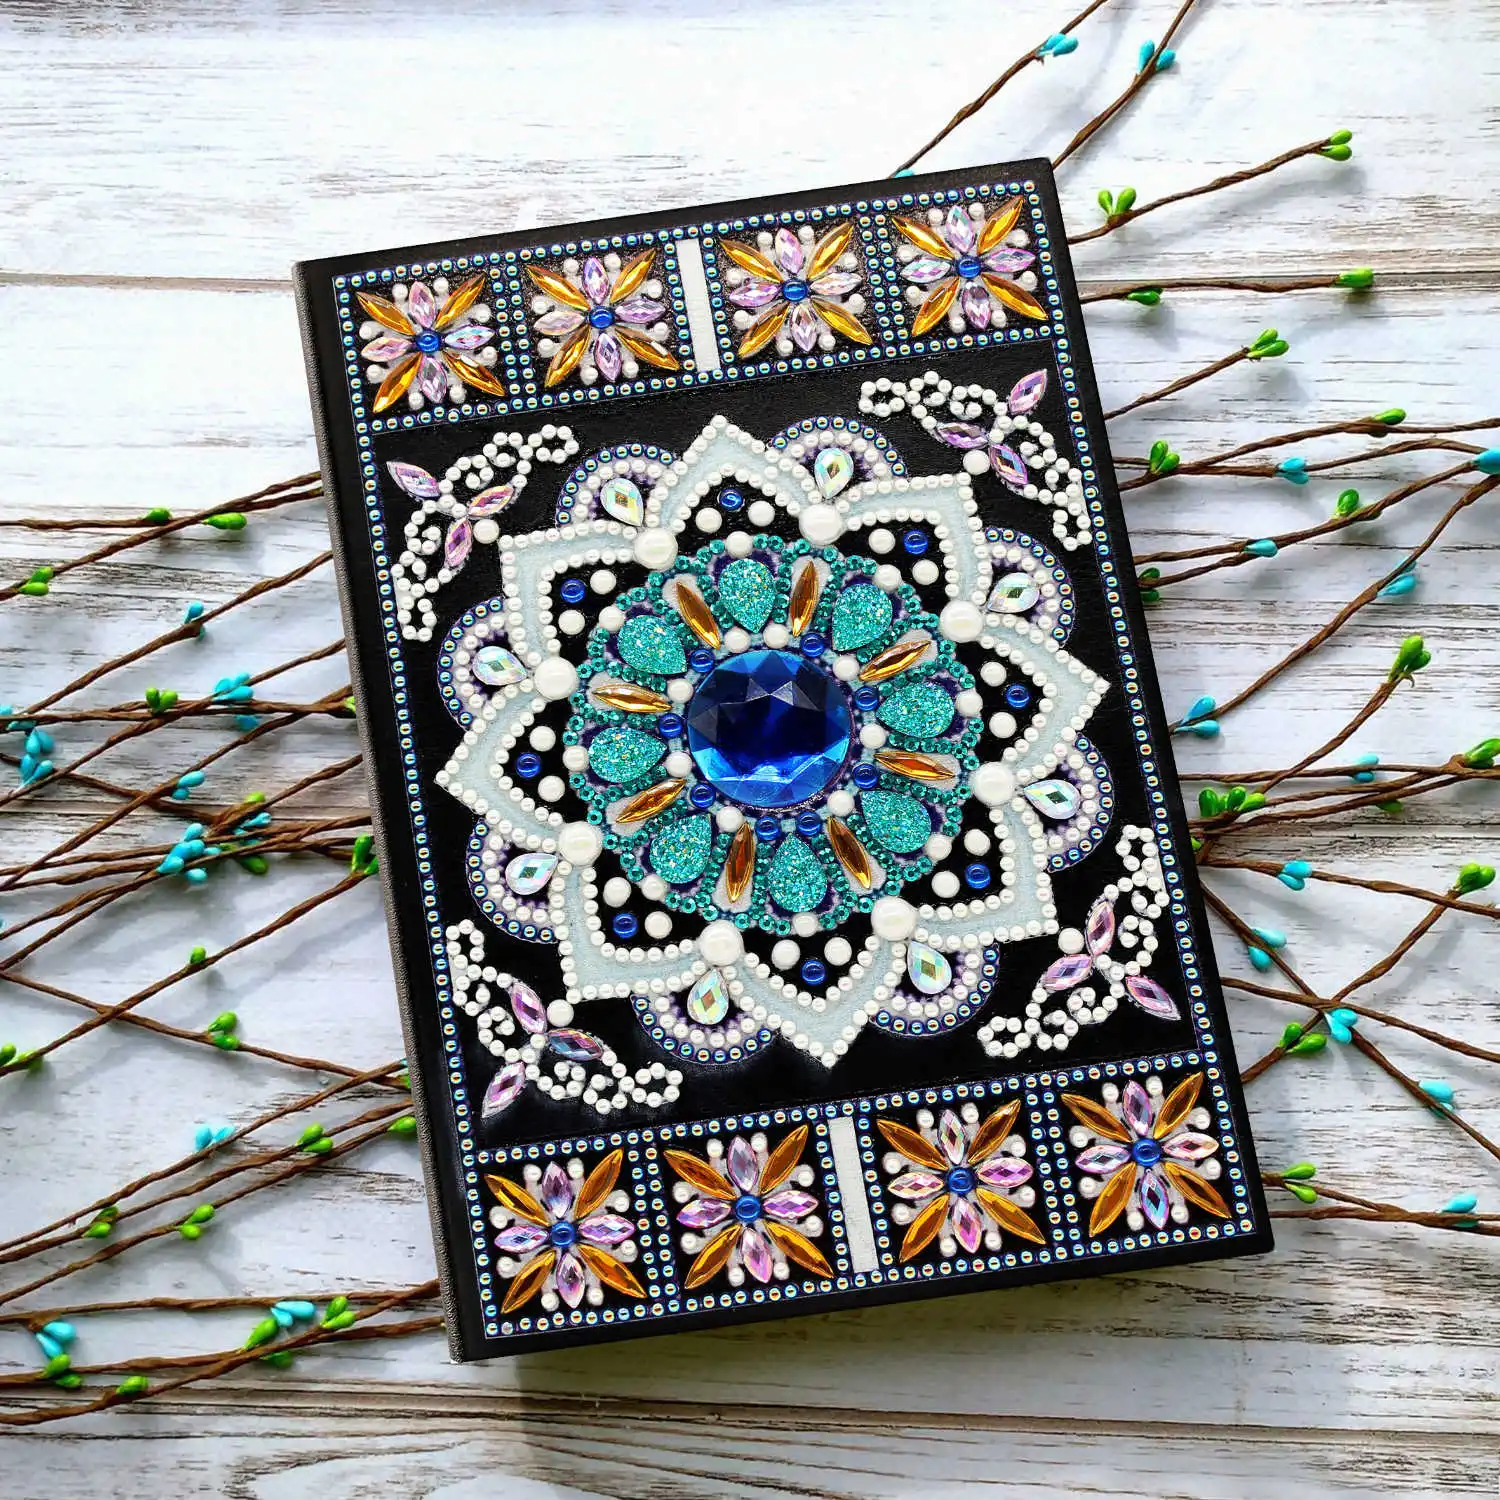 AZQSD Алмазная вышивка картина цветок А5 дневник тетрадь особой формы дрель подарок на день рождения DIY Новинка